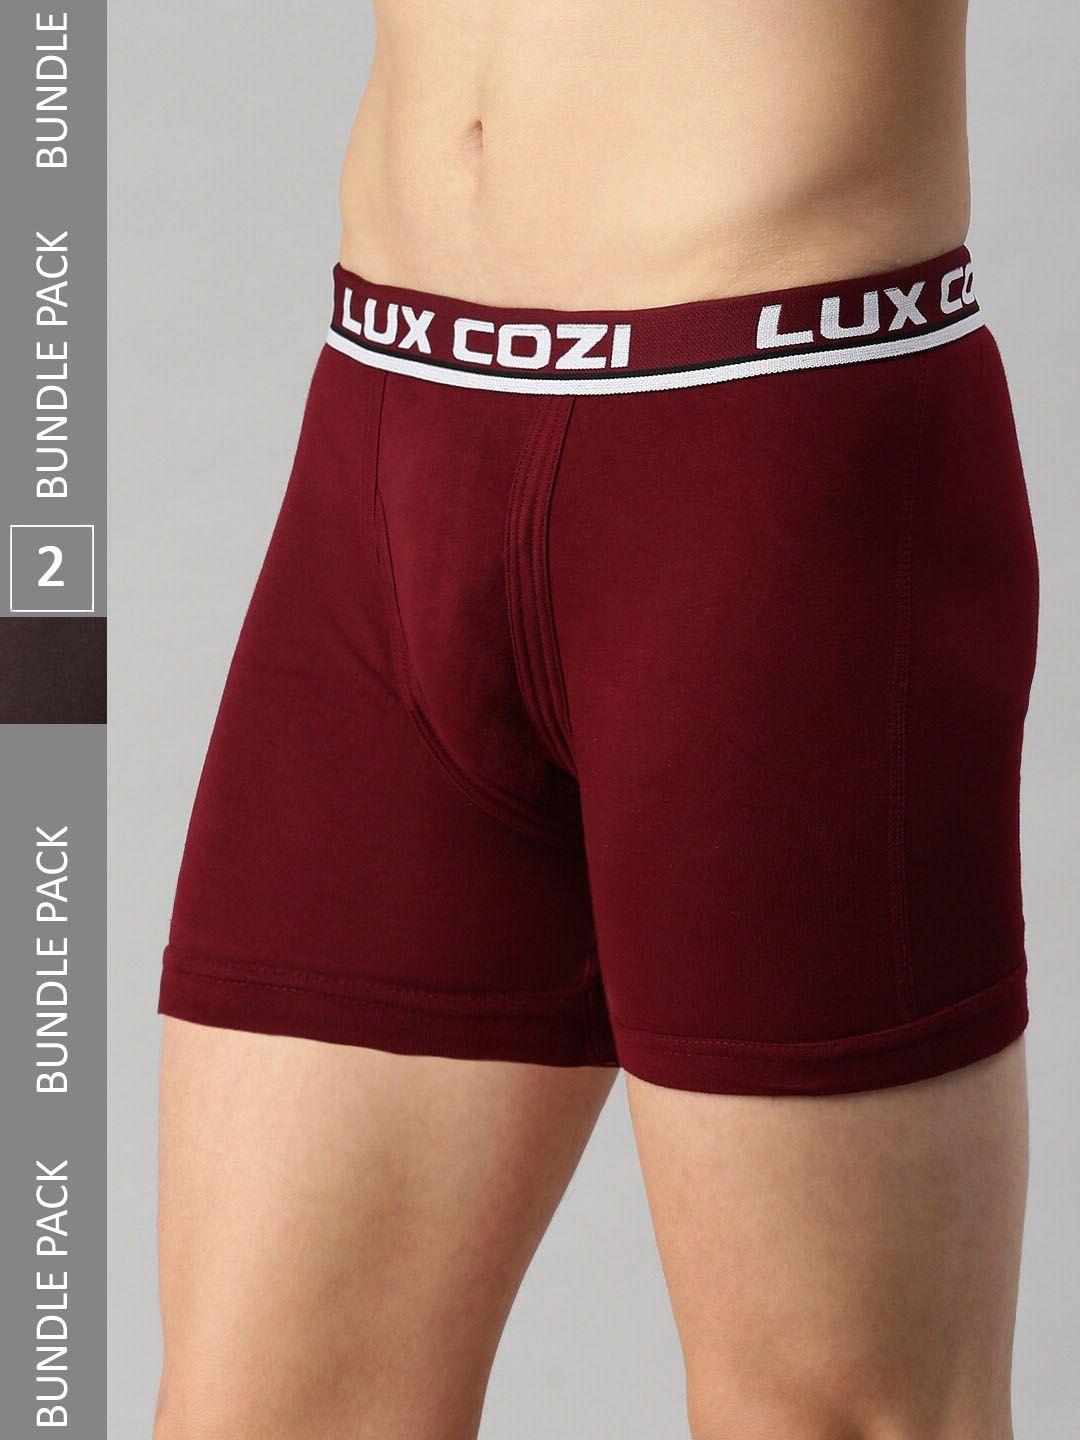 lux cozi men pack of 2  mid-rise trunks- cozi_intlock_cof_mrn_2pc